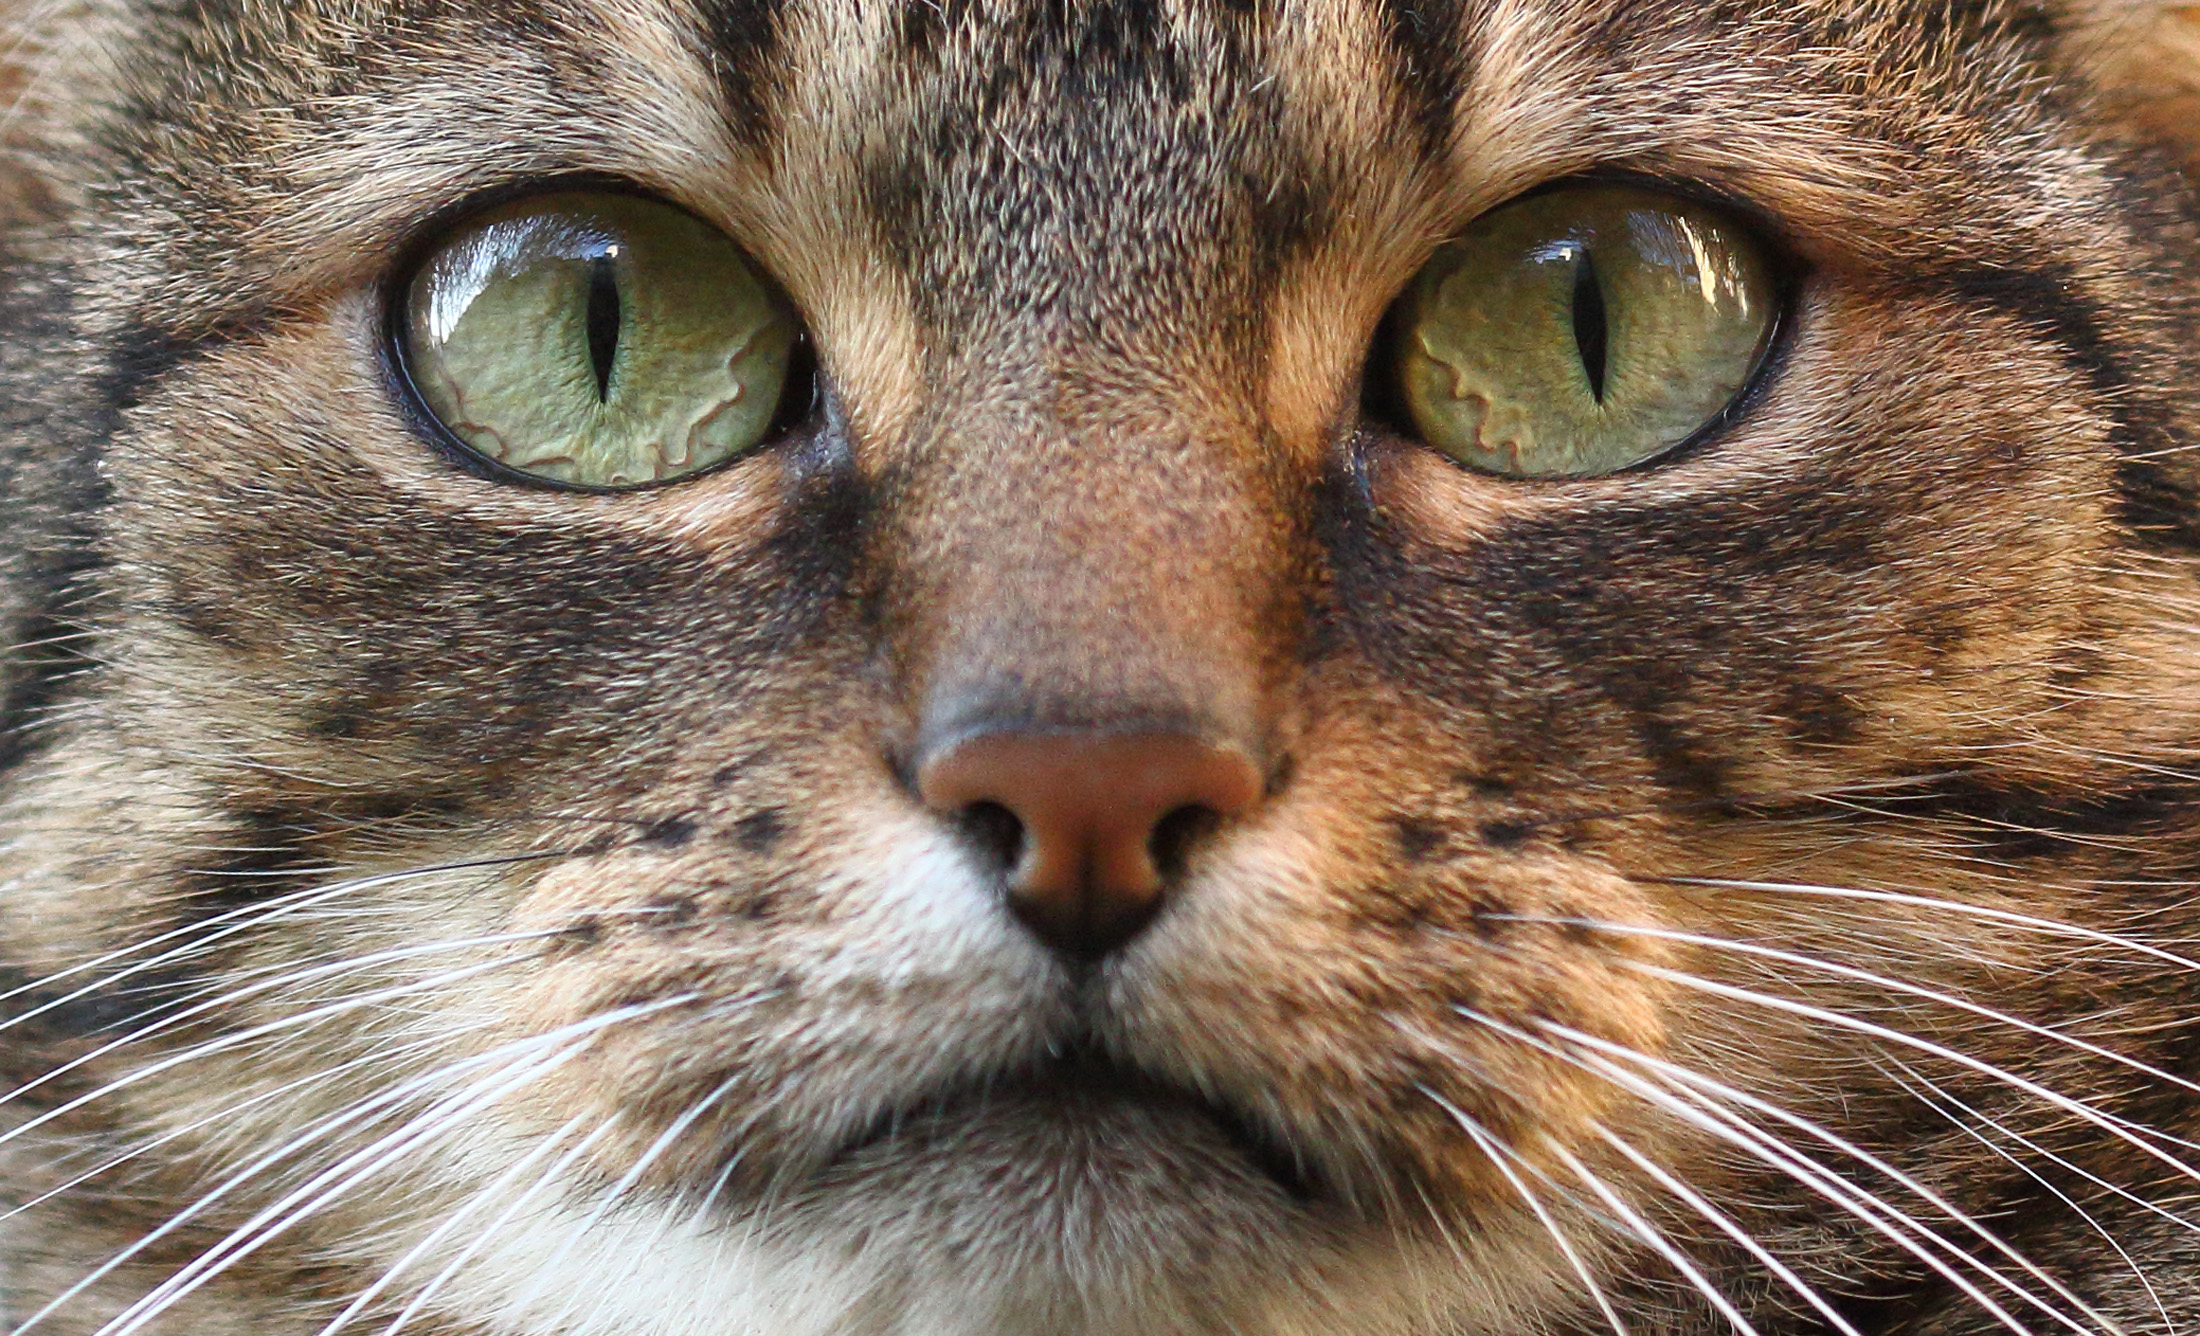 Descarga gratuita de fondo de pantalla para móvil de Animales, Gatos, Gato, Bozal, Macrofotografía.